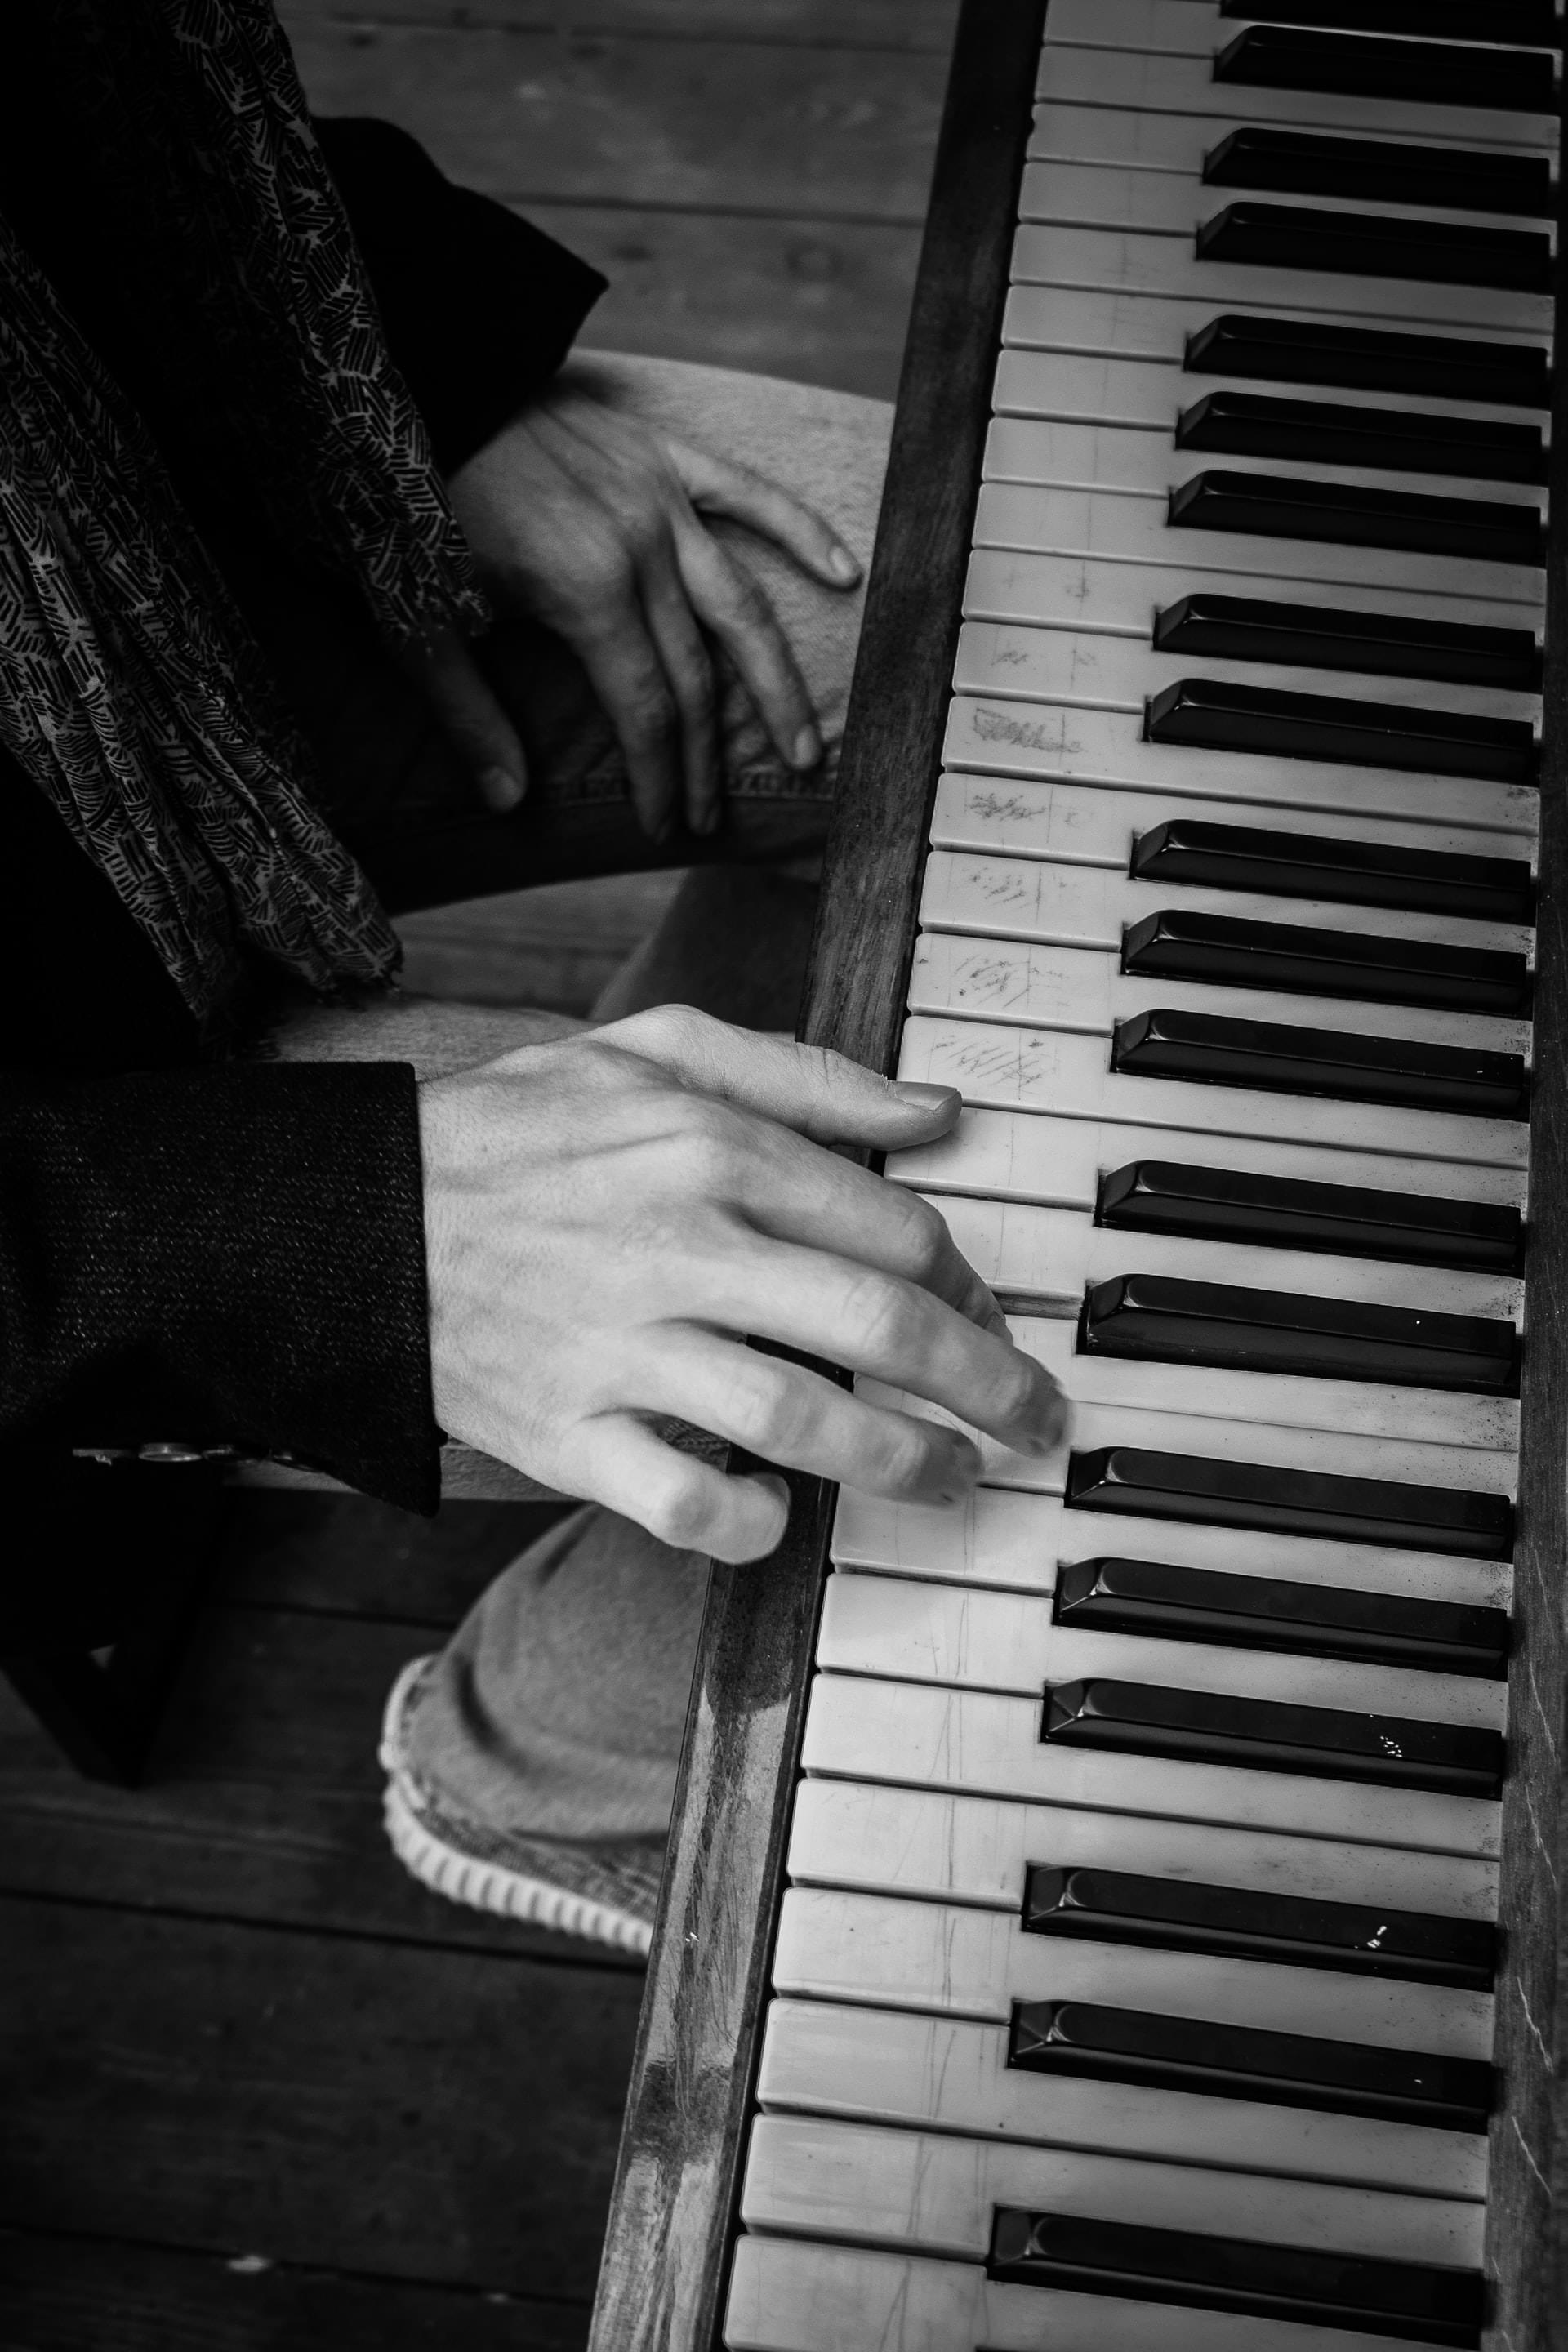 représentation d'une personne jouant du piano